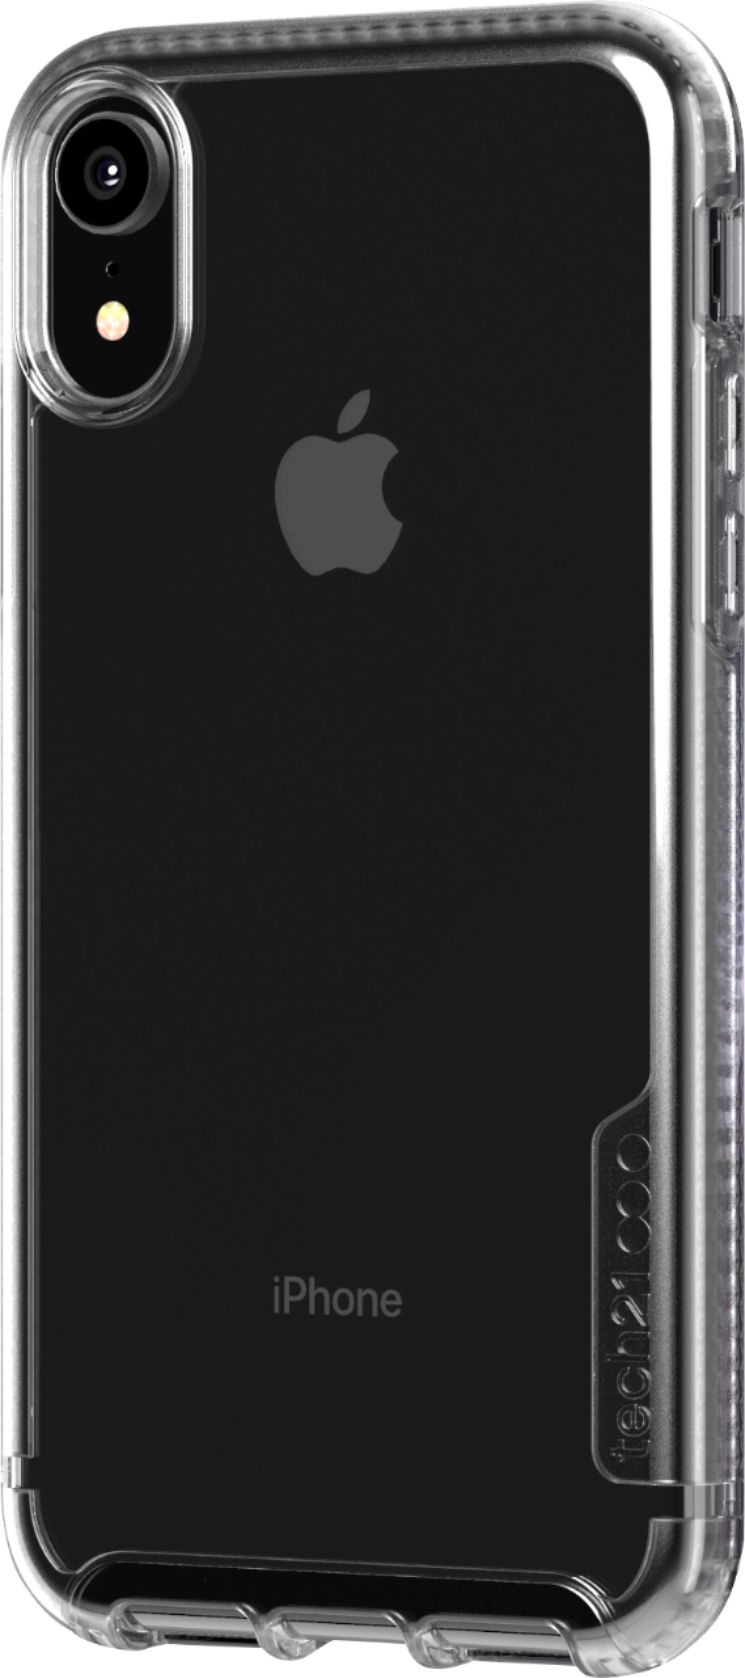 Tech21 Iphone Case Xr Off 74 Www Gmcanantnag Net